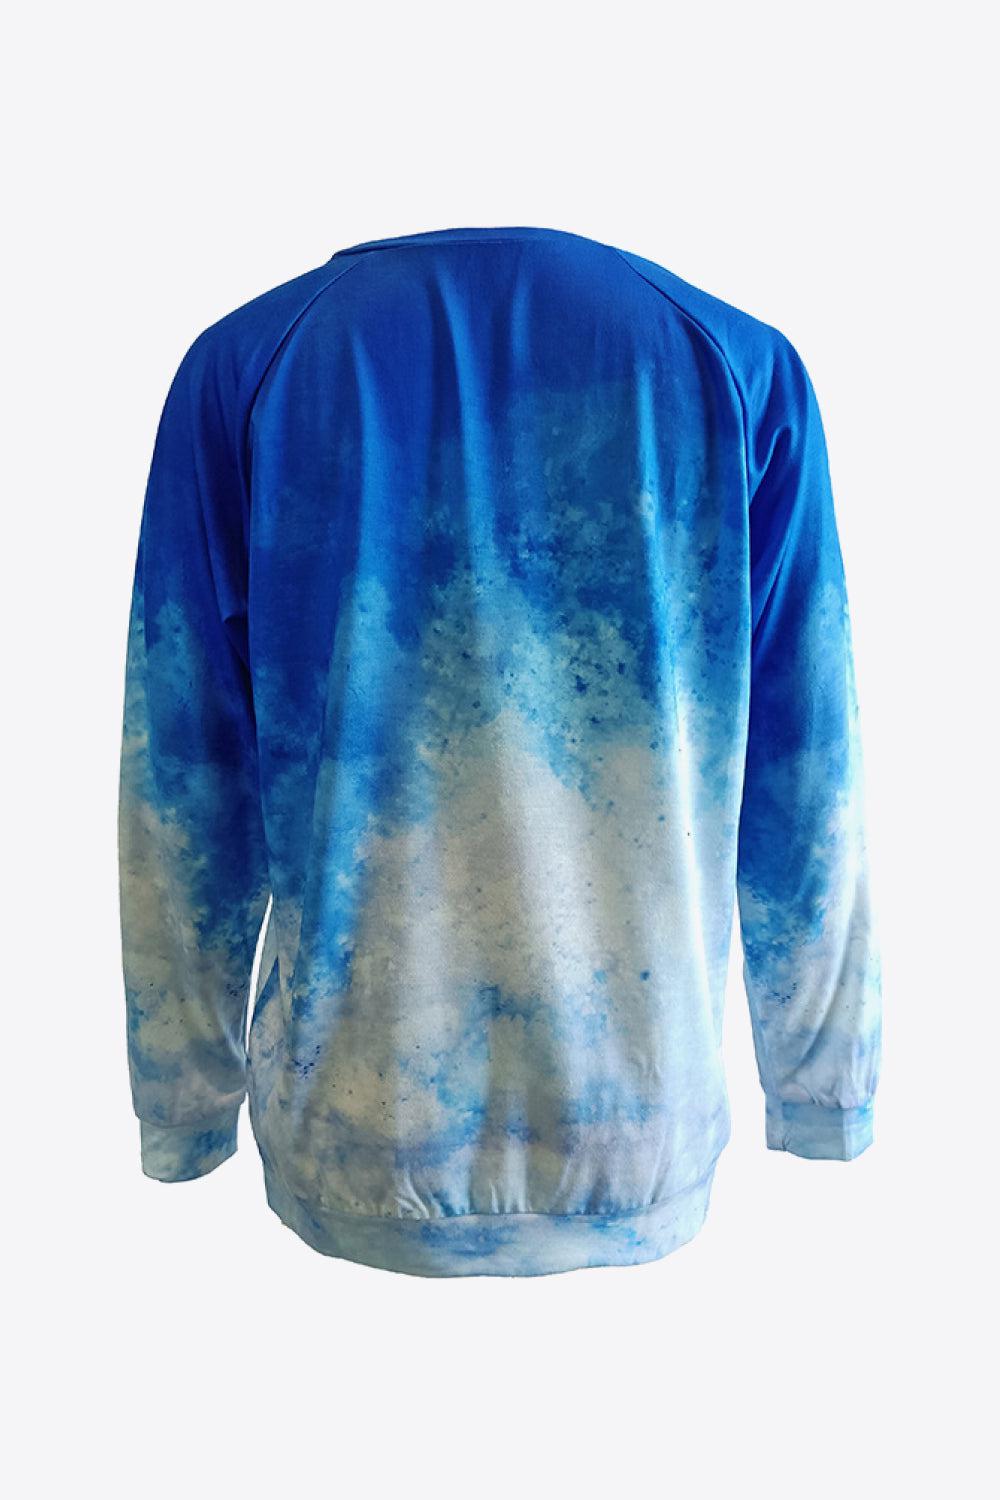 Tie-Dye Butterfly Graphic Raglan Sleeve Sweatshirt BLUE ZONE PLANET